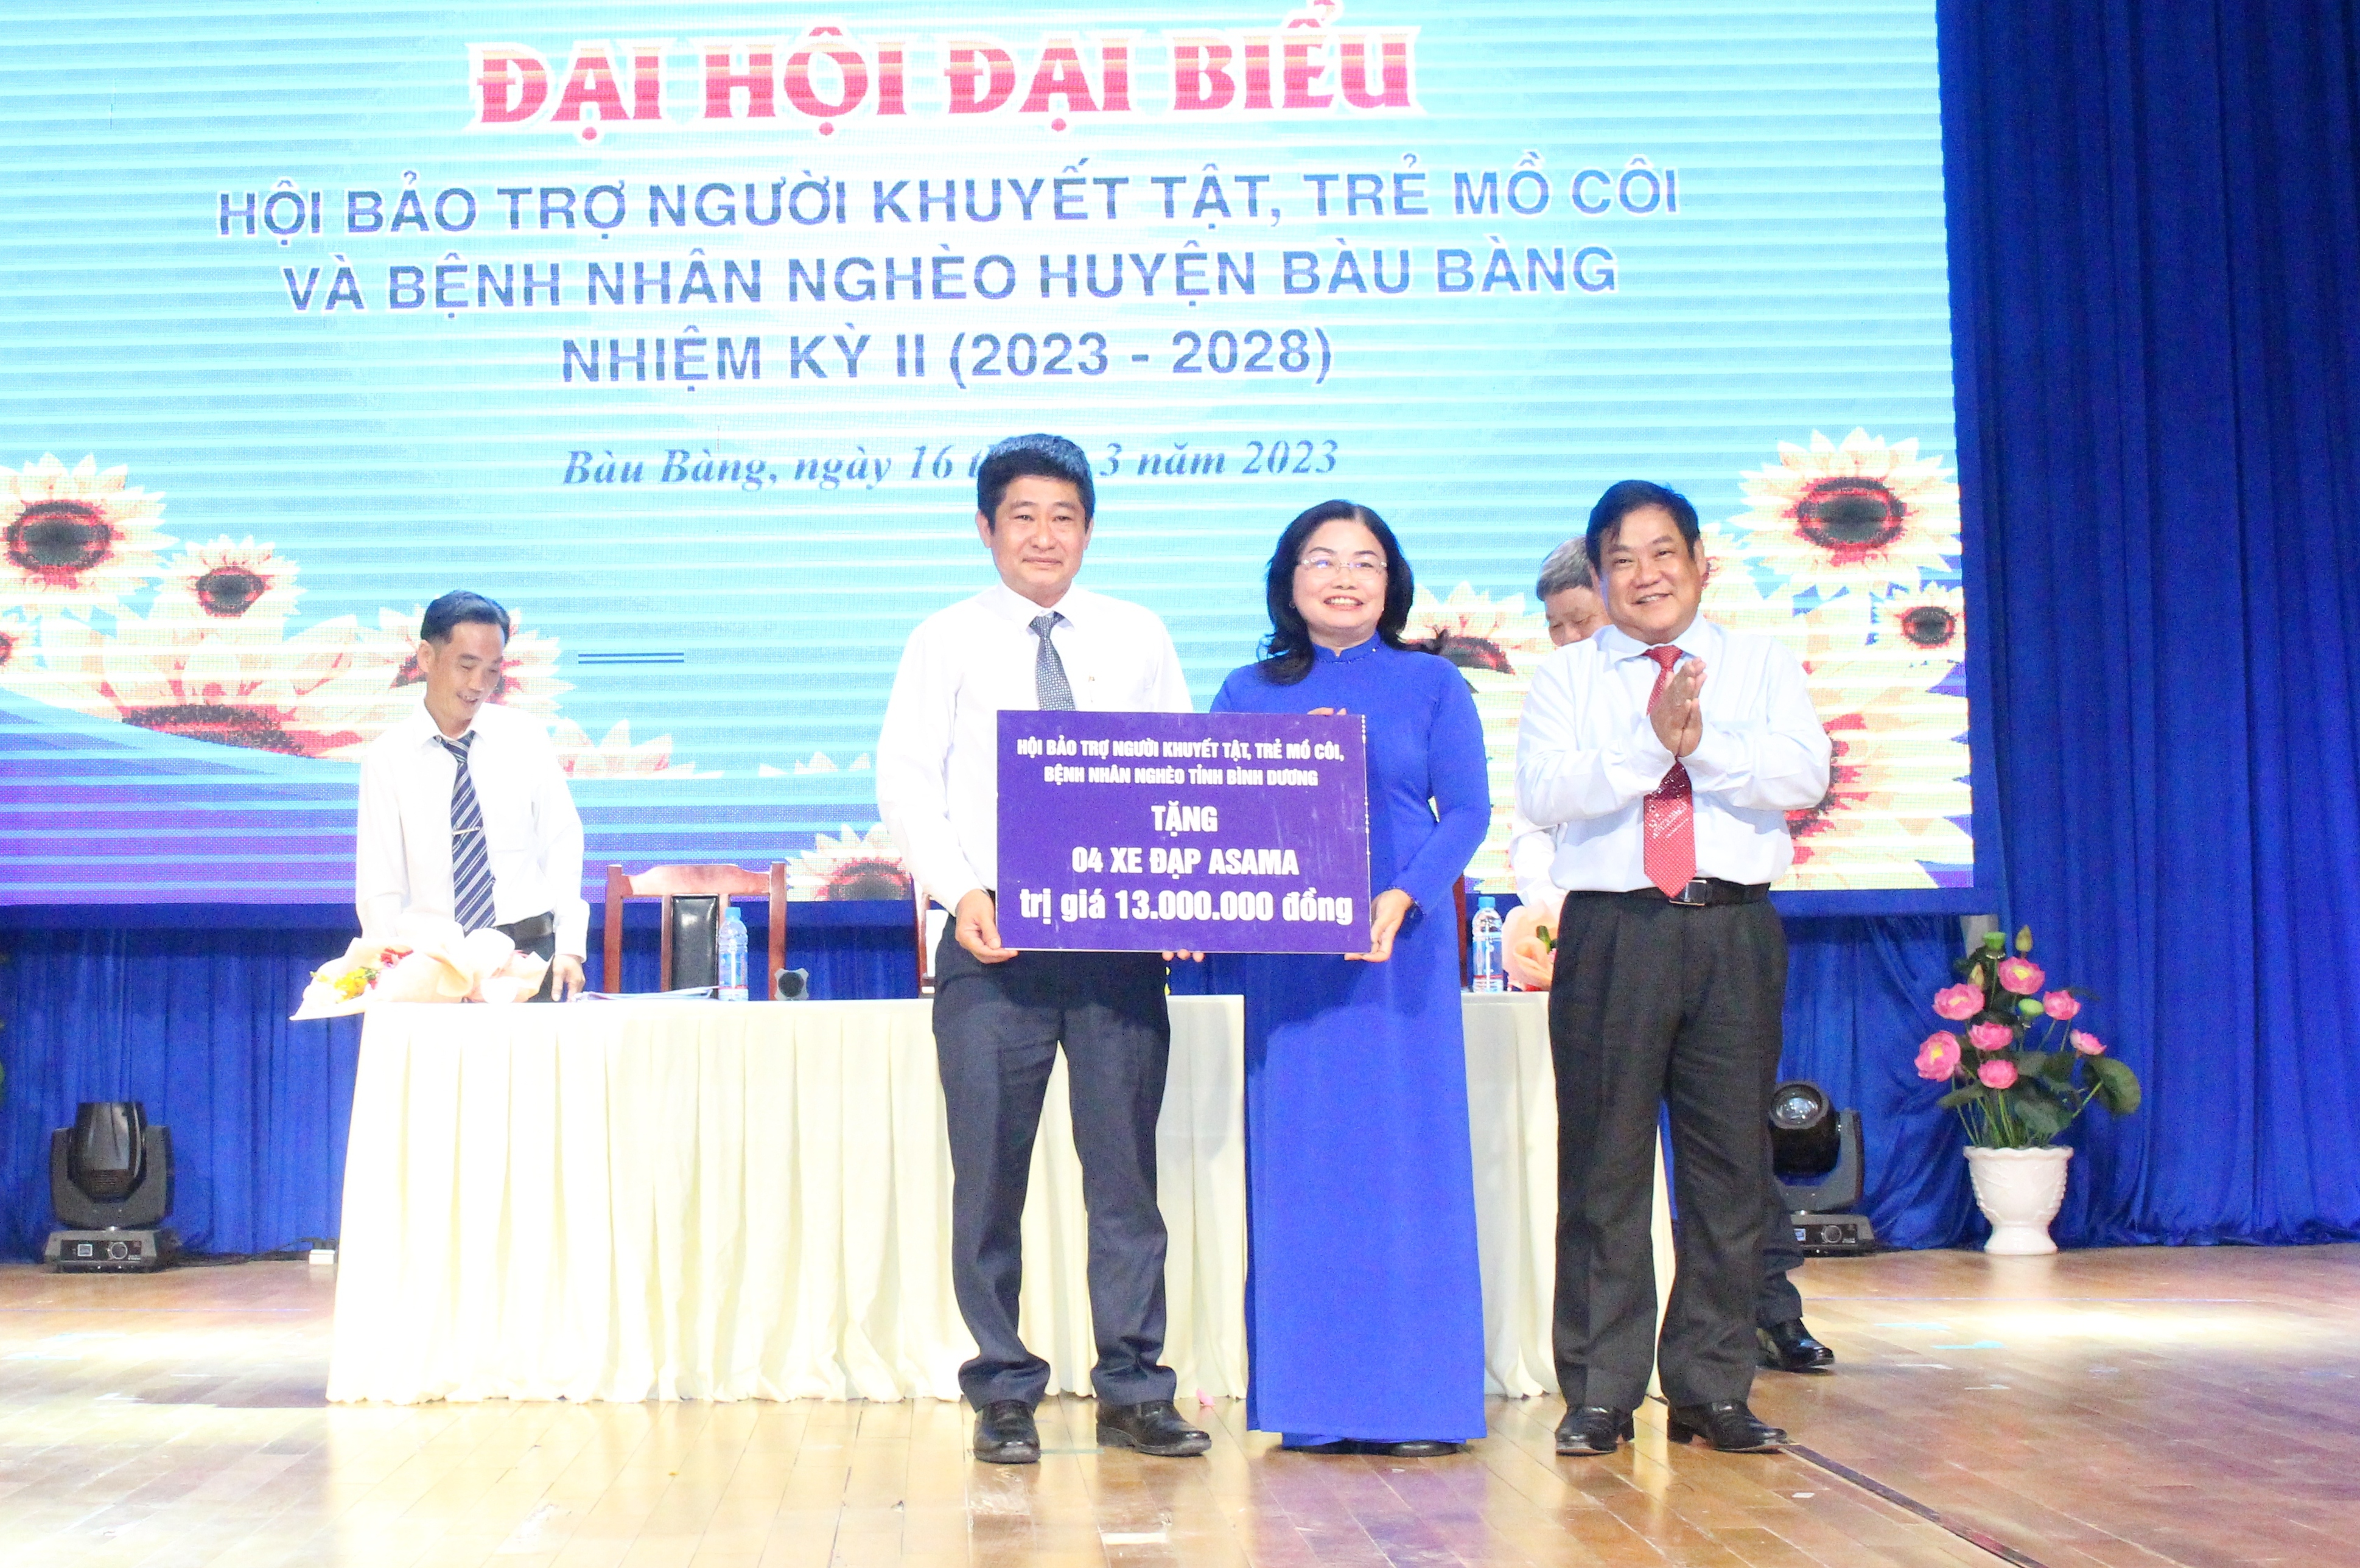 Hội Bảo trợ người khuyết tật, trẻ mồ côi và bệnh nhân nghèo huyện Bàu Bàng tổ chức Đại hội Đại biểu lần thứ II, nhiệm kỳ 2023 – 2028.